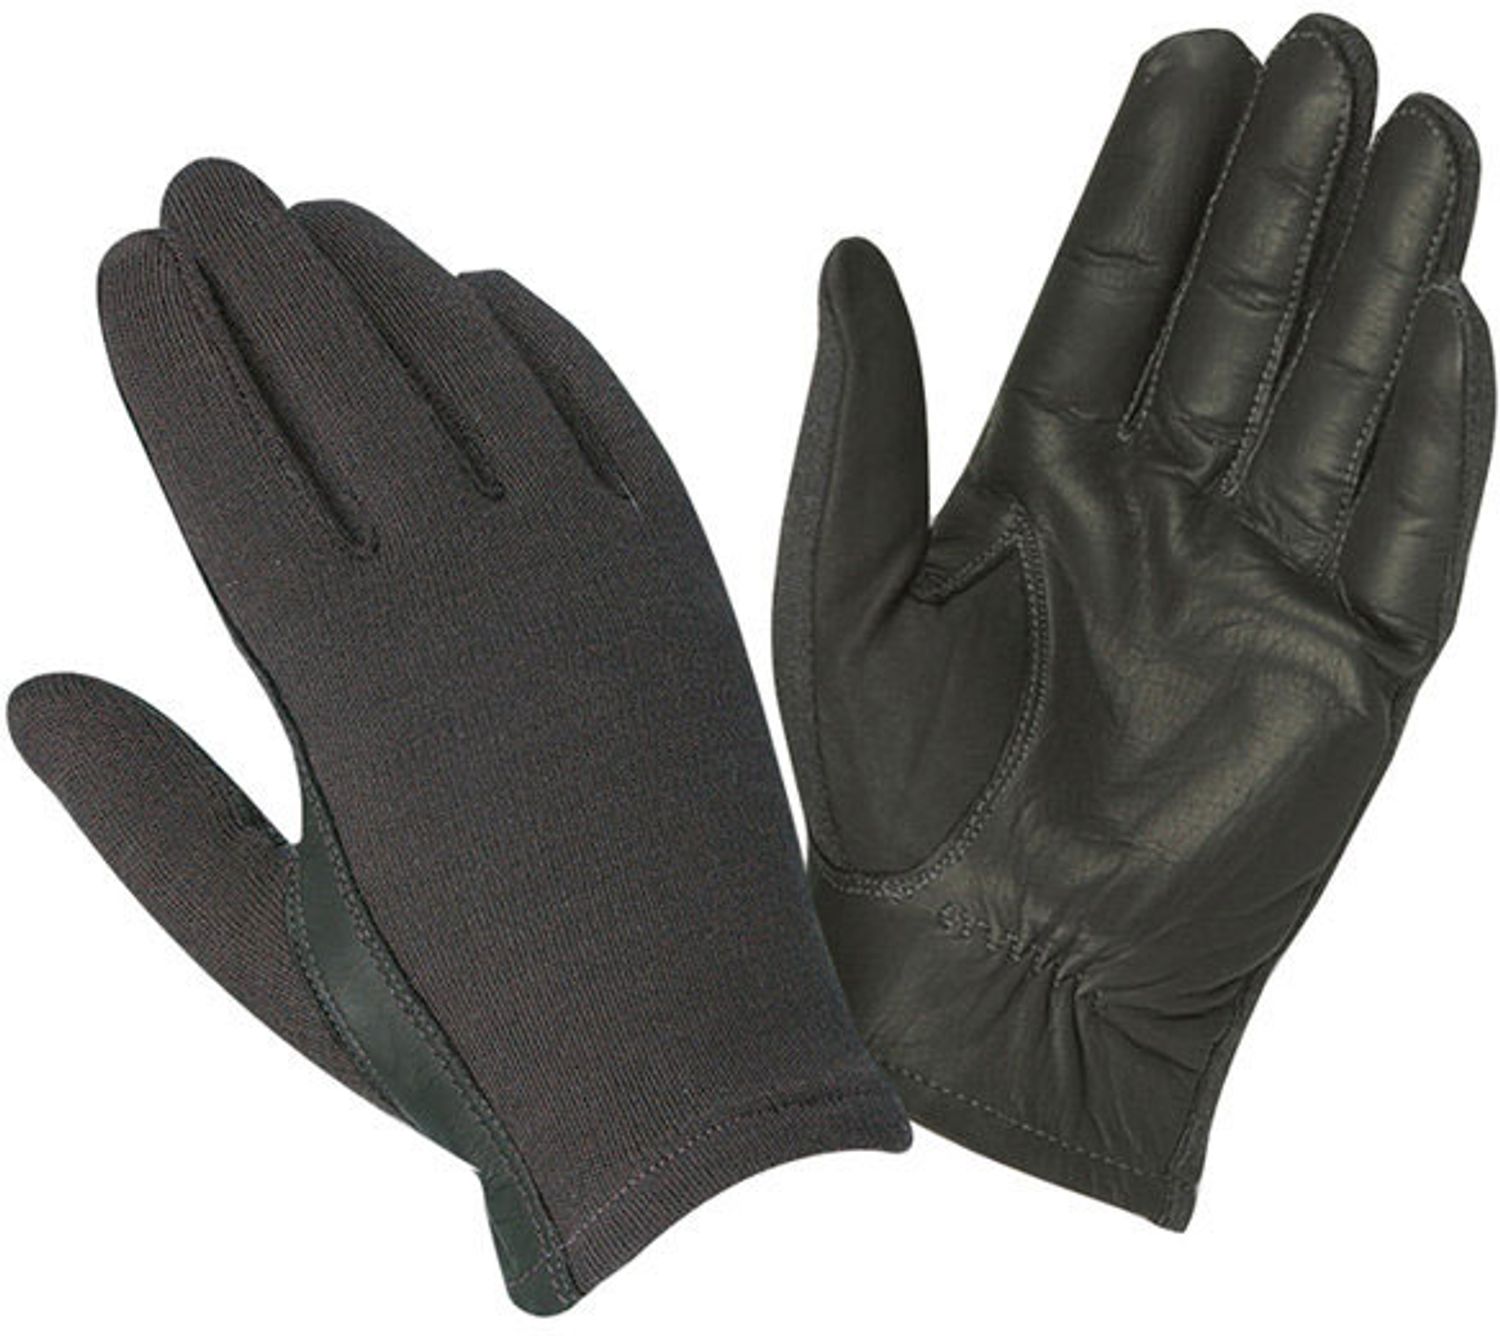 Hatch KSG500 Shooting Gloves with Kevlar, L - KnifeCenter - HGKSG500-L